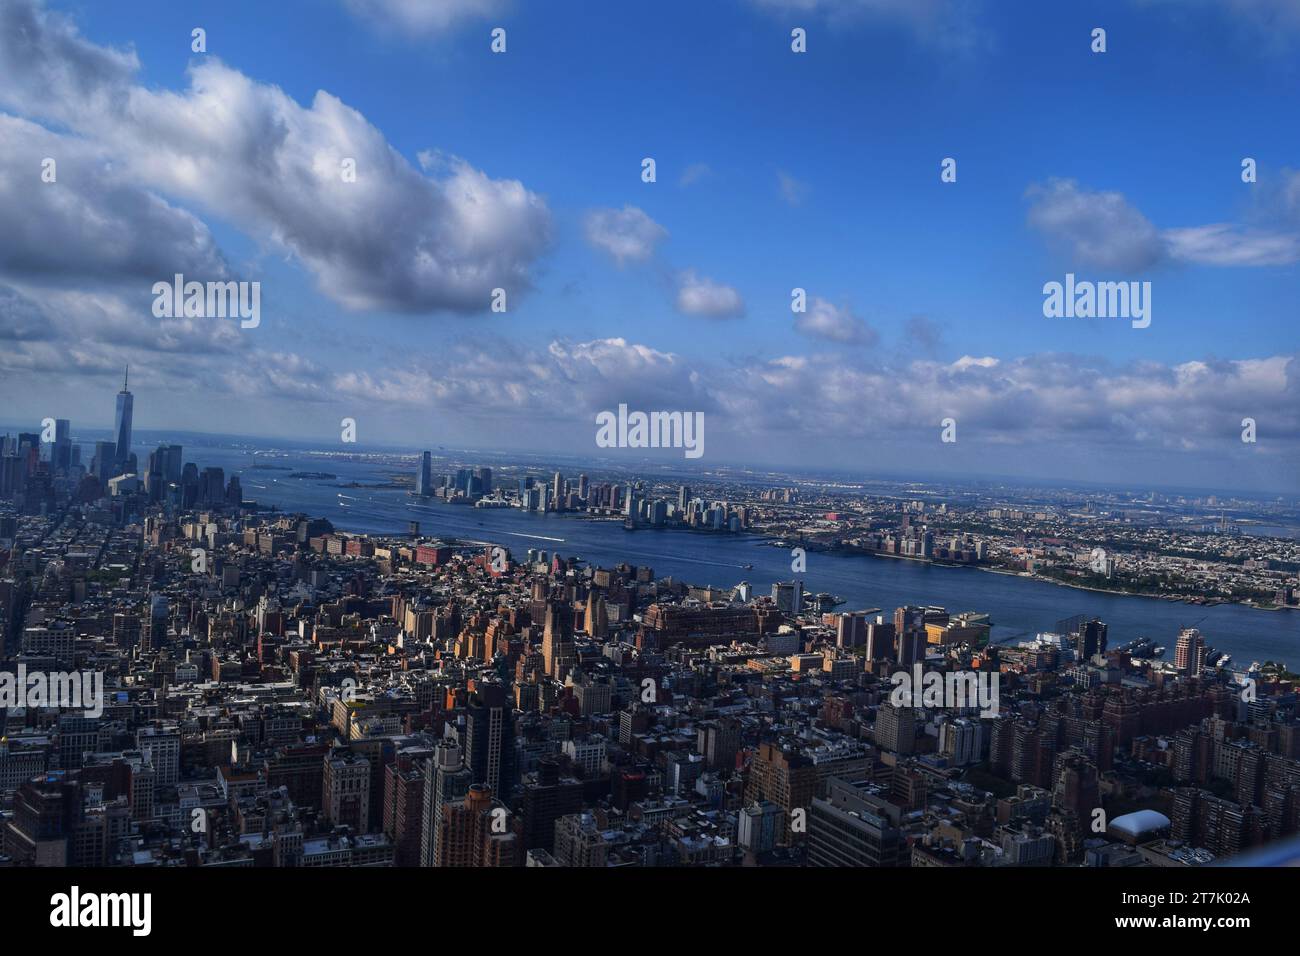 Scopri la bellezza mozzafiato delle città americane sotto il vasto cielo ceruleo in questi splendidi panorami urbani Foto Stock